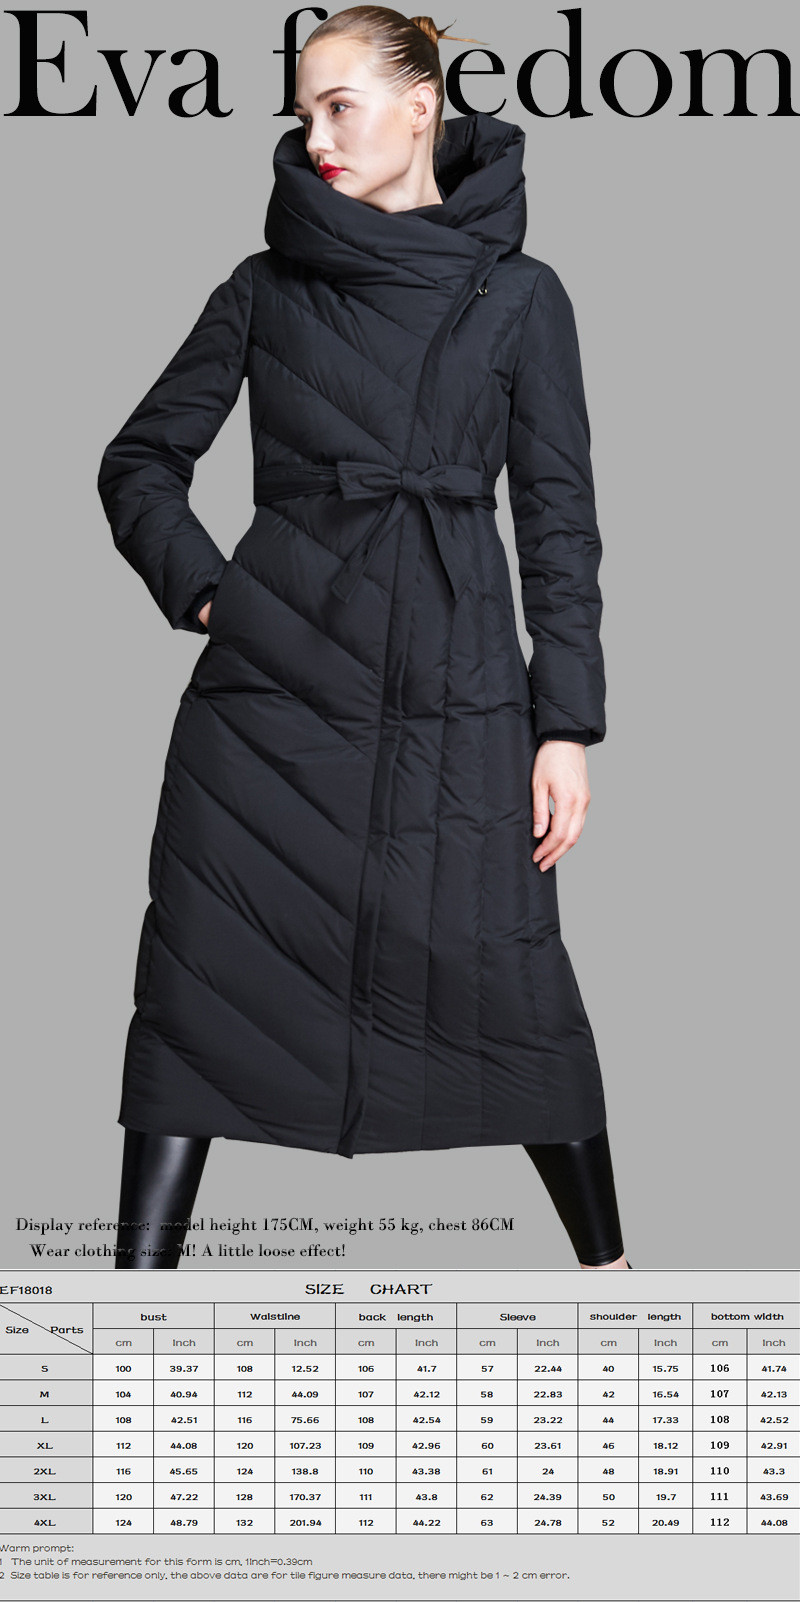 洋湖轩榭 2018新款冬装外套 欧美时尚修身设计女式羽绒服长款